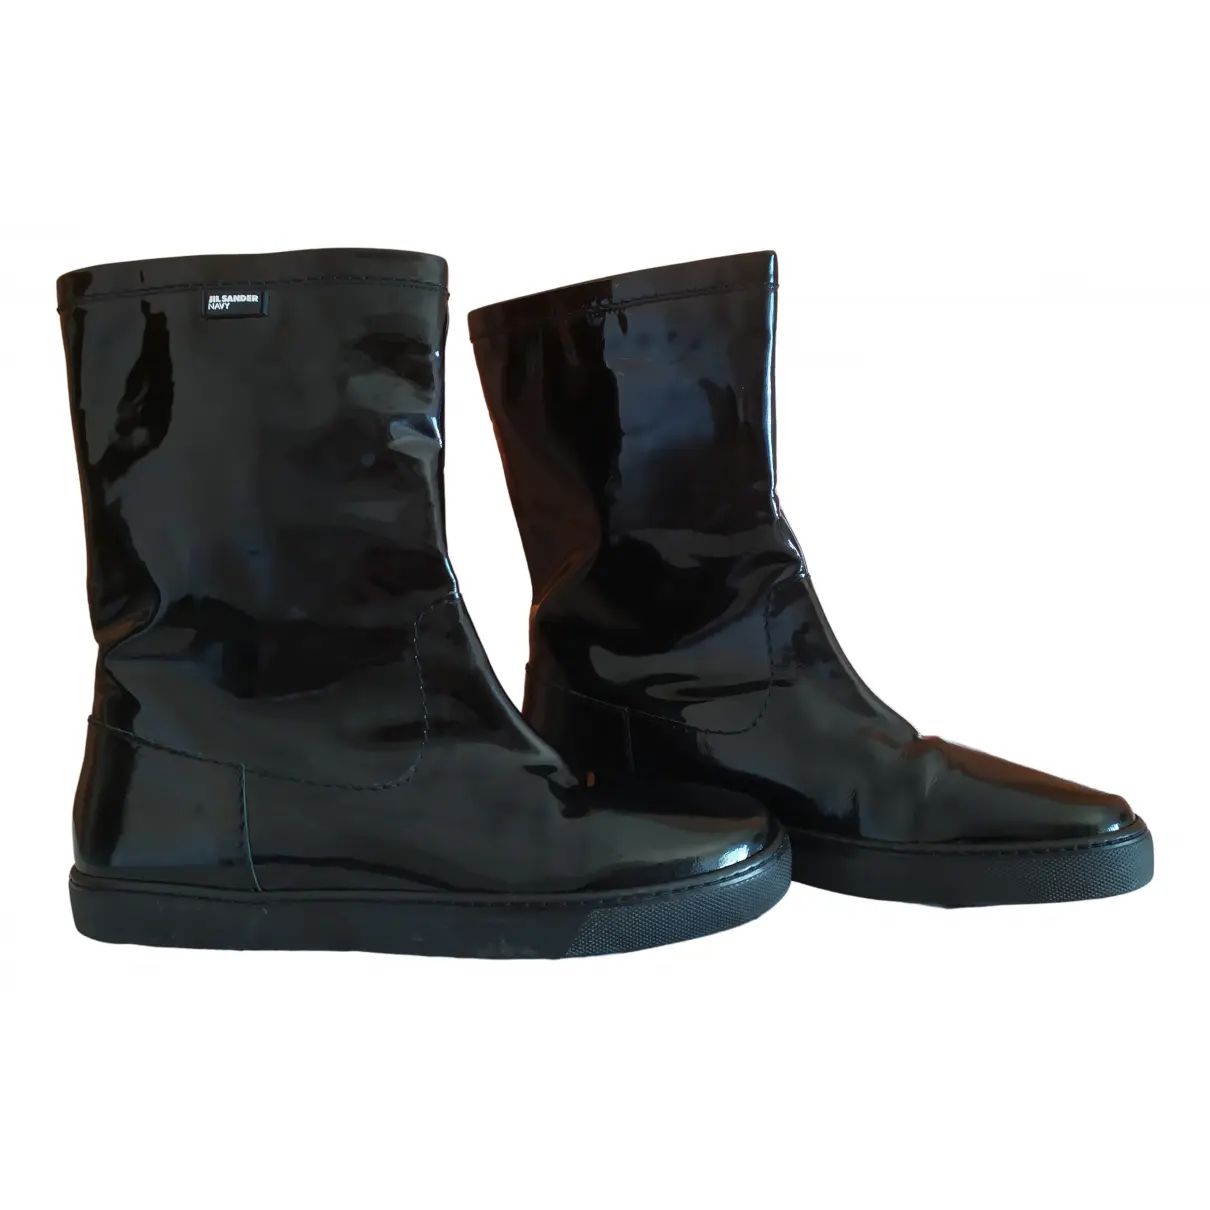 Patent leather wellington boots Jil Sander